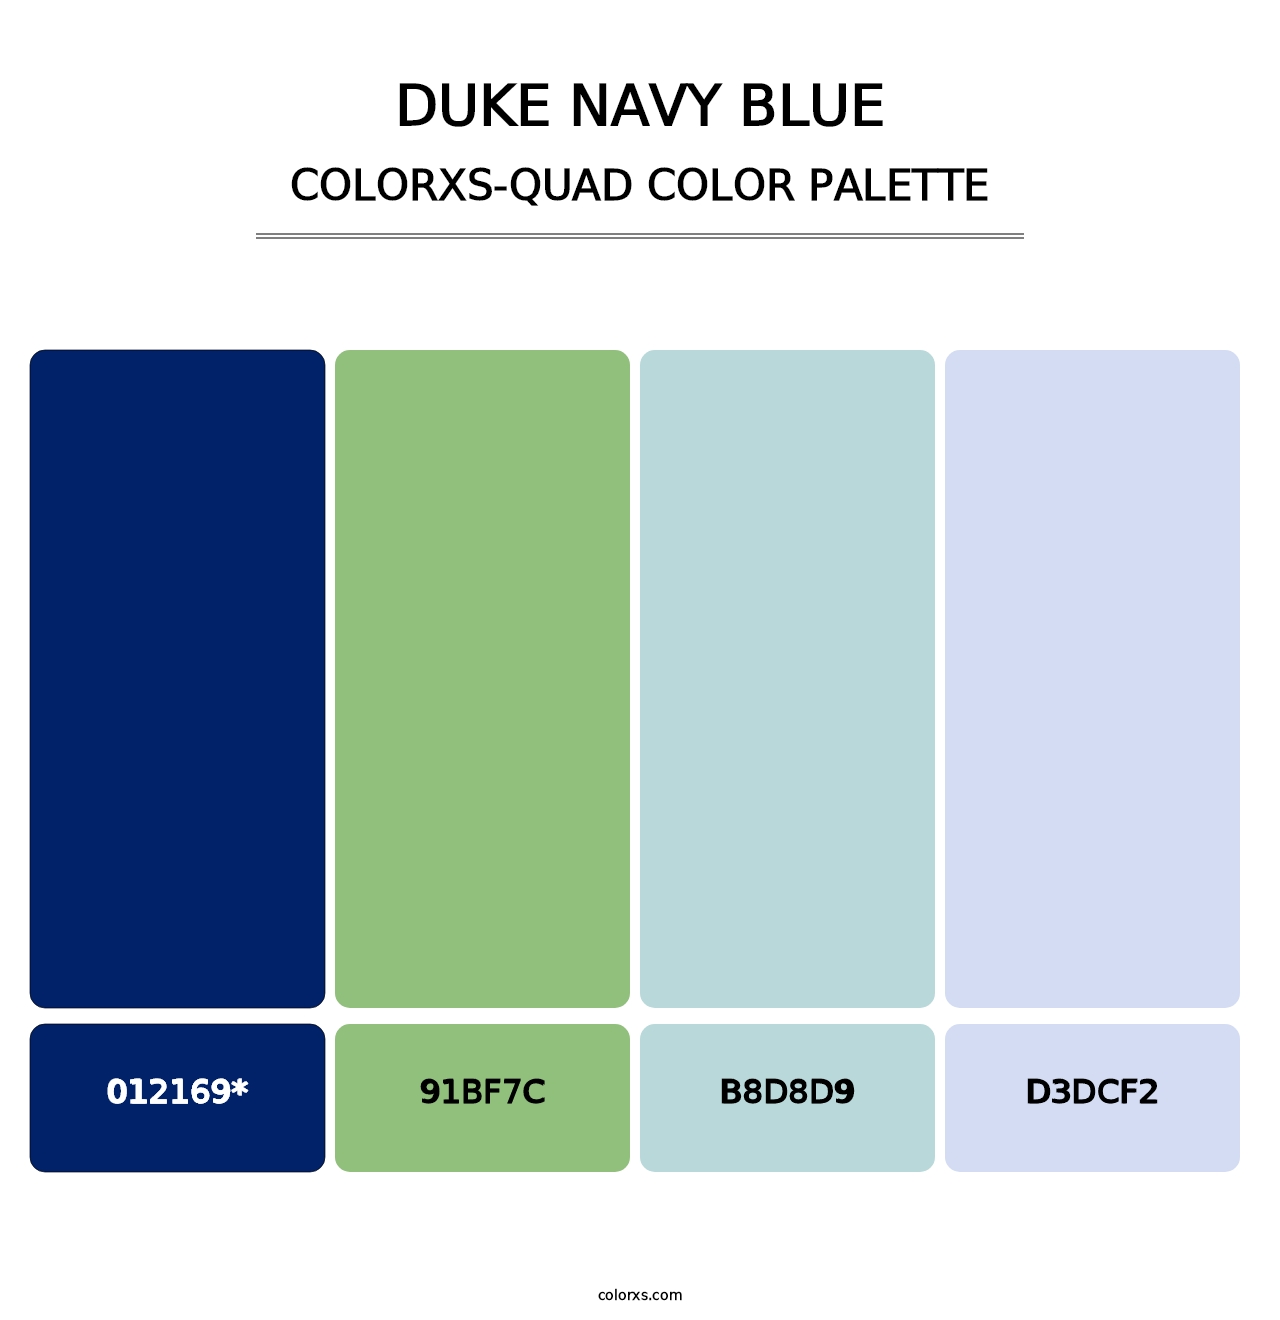 Duke Navy Blue - Colorxs Quad Palette